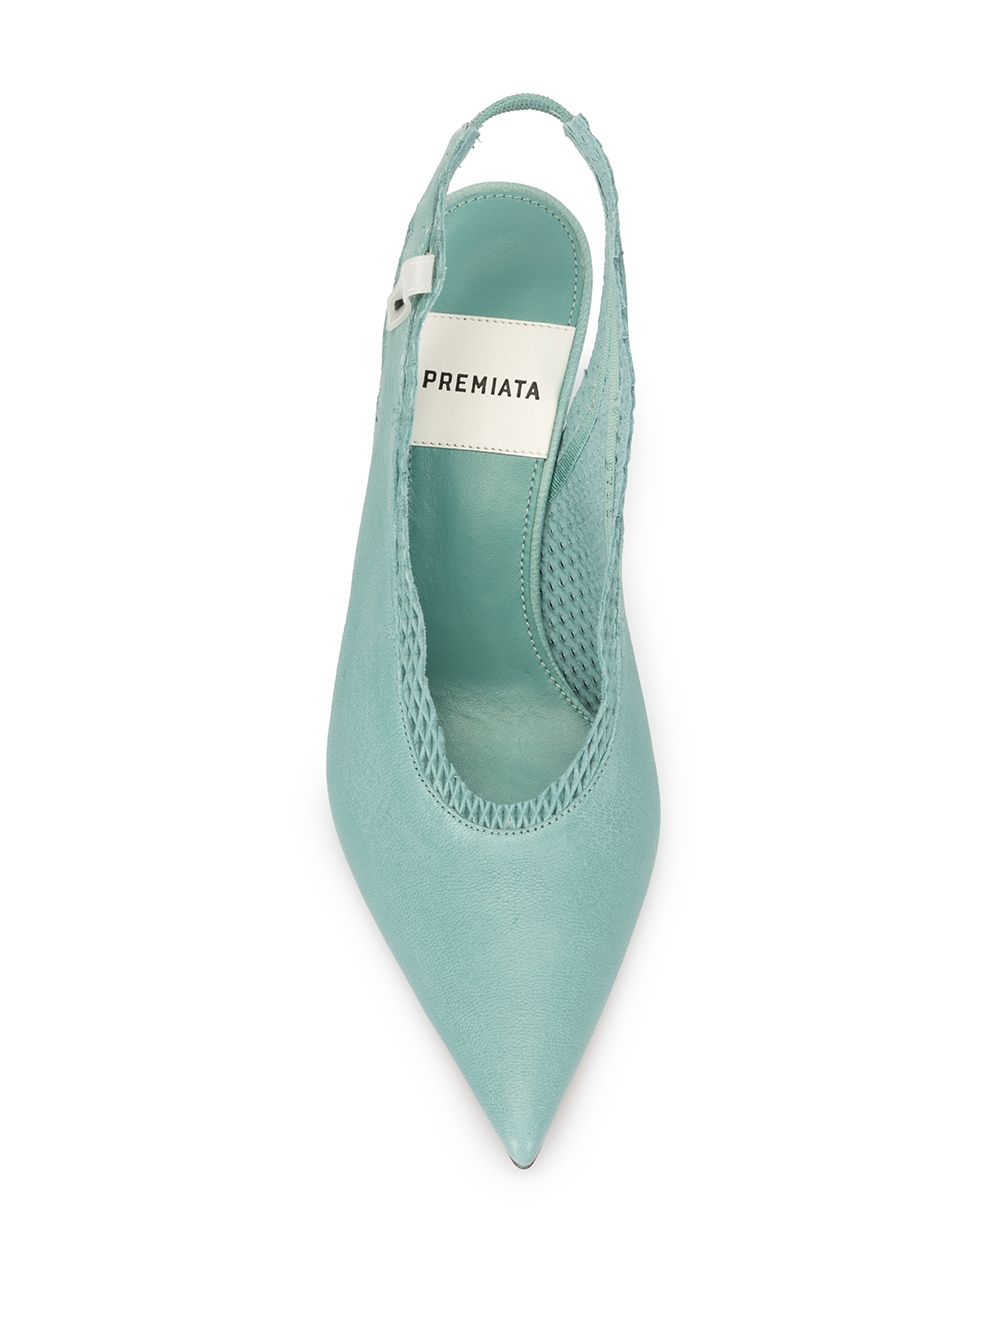 фото Premiata туфли на низком каблуке с ремешком на пятке